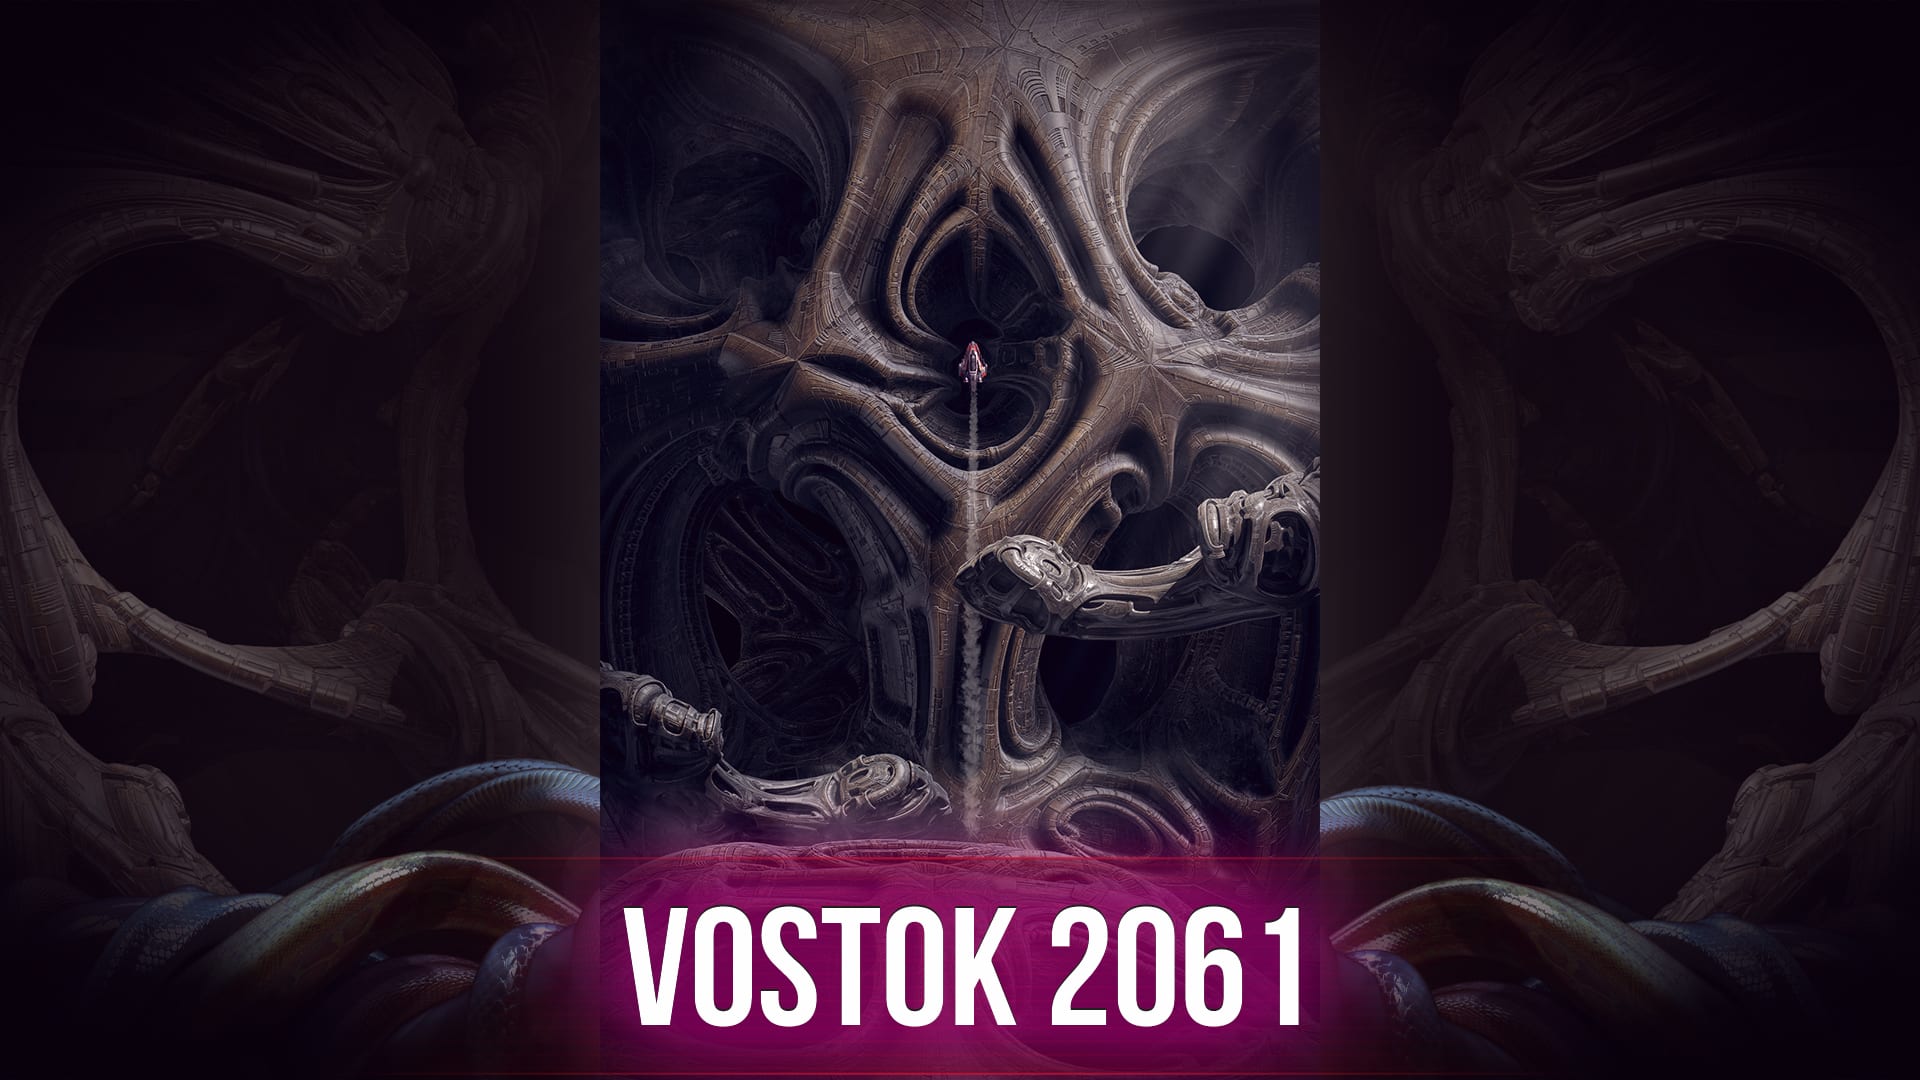 Vostok 2061